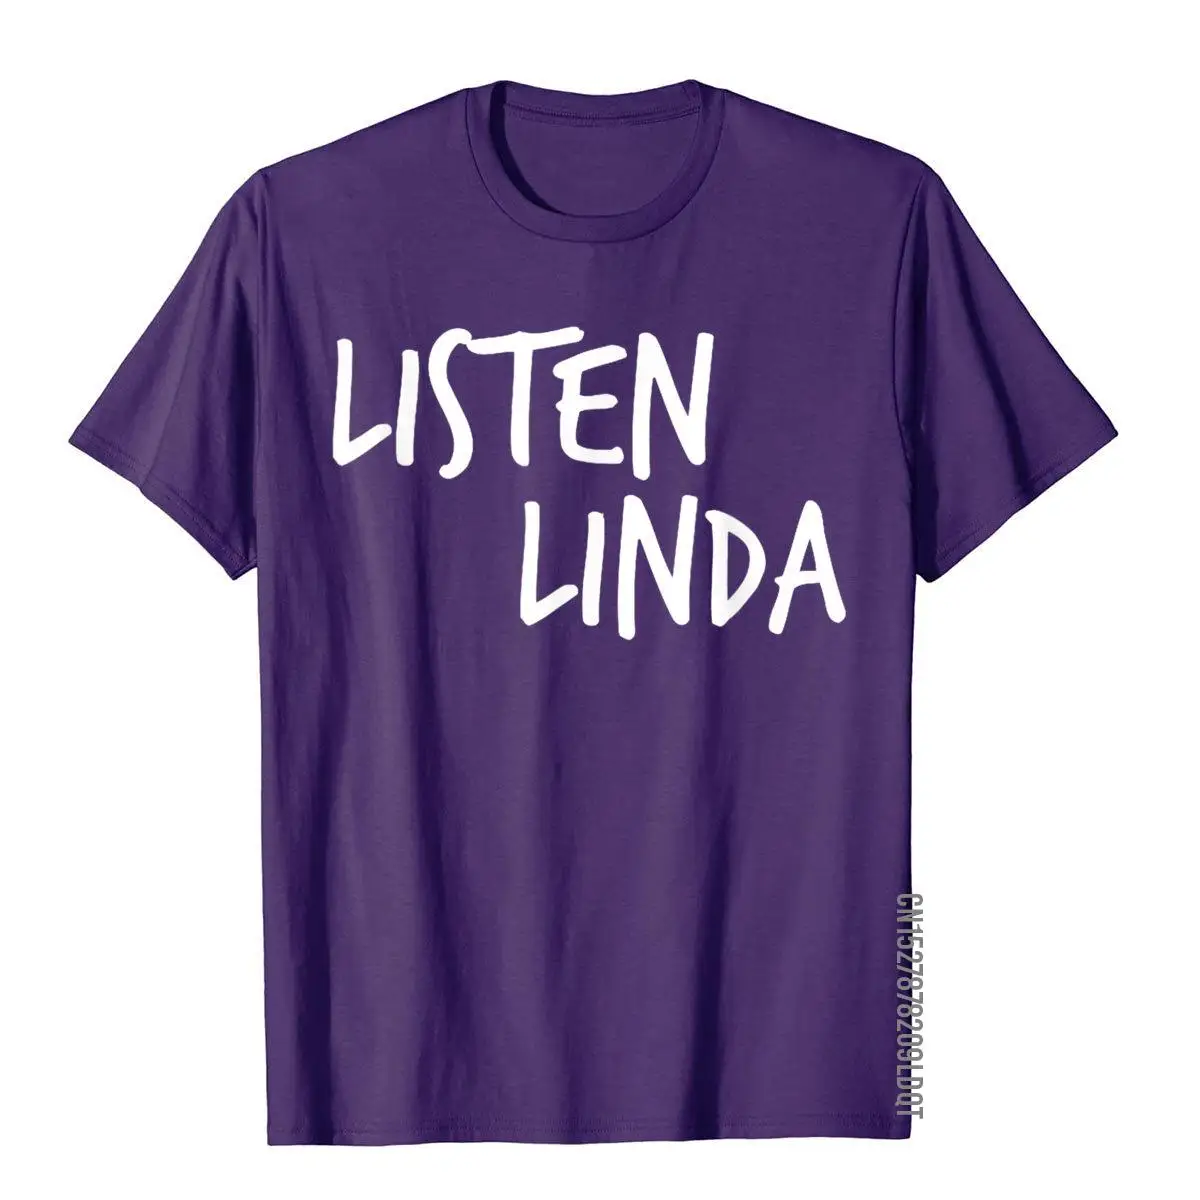 Listen Linda tshirt funny shirts. Mom gift__B12205purple